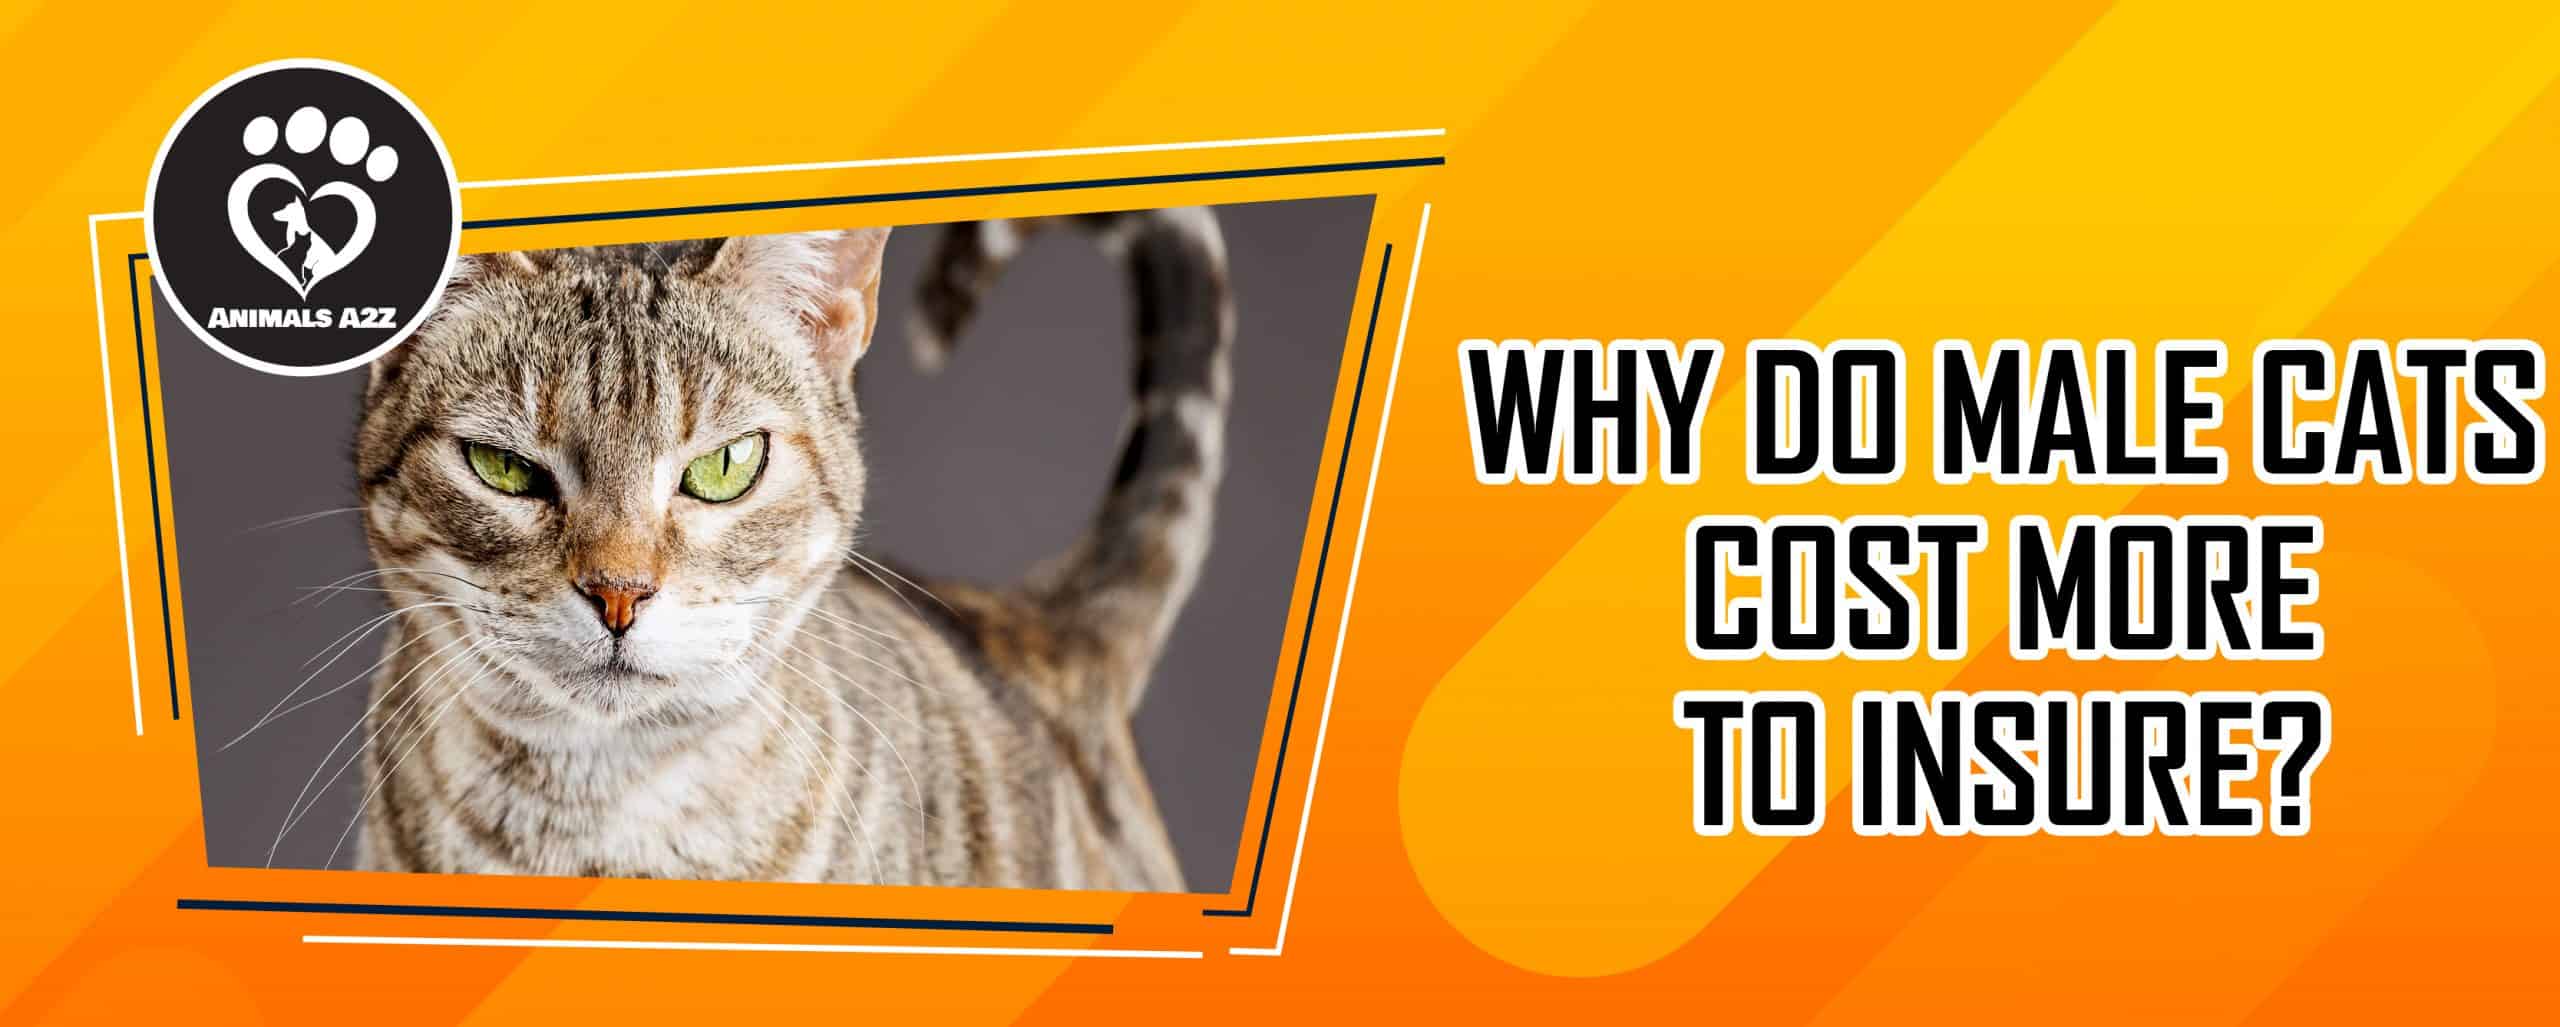 Warum sind männliche Katzen teurer zu versichern?